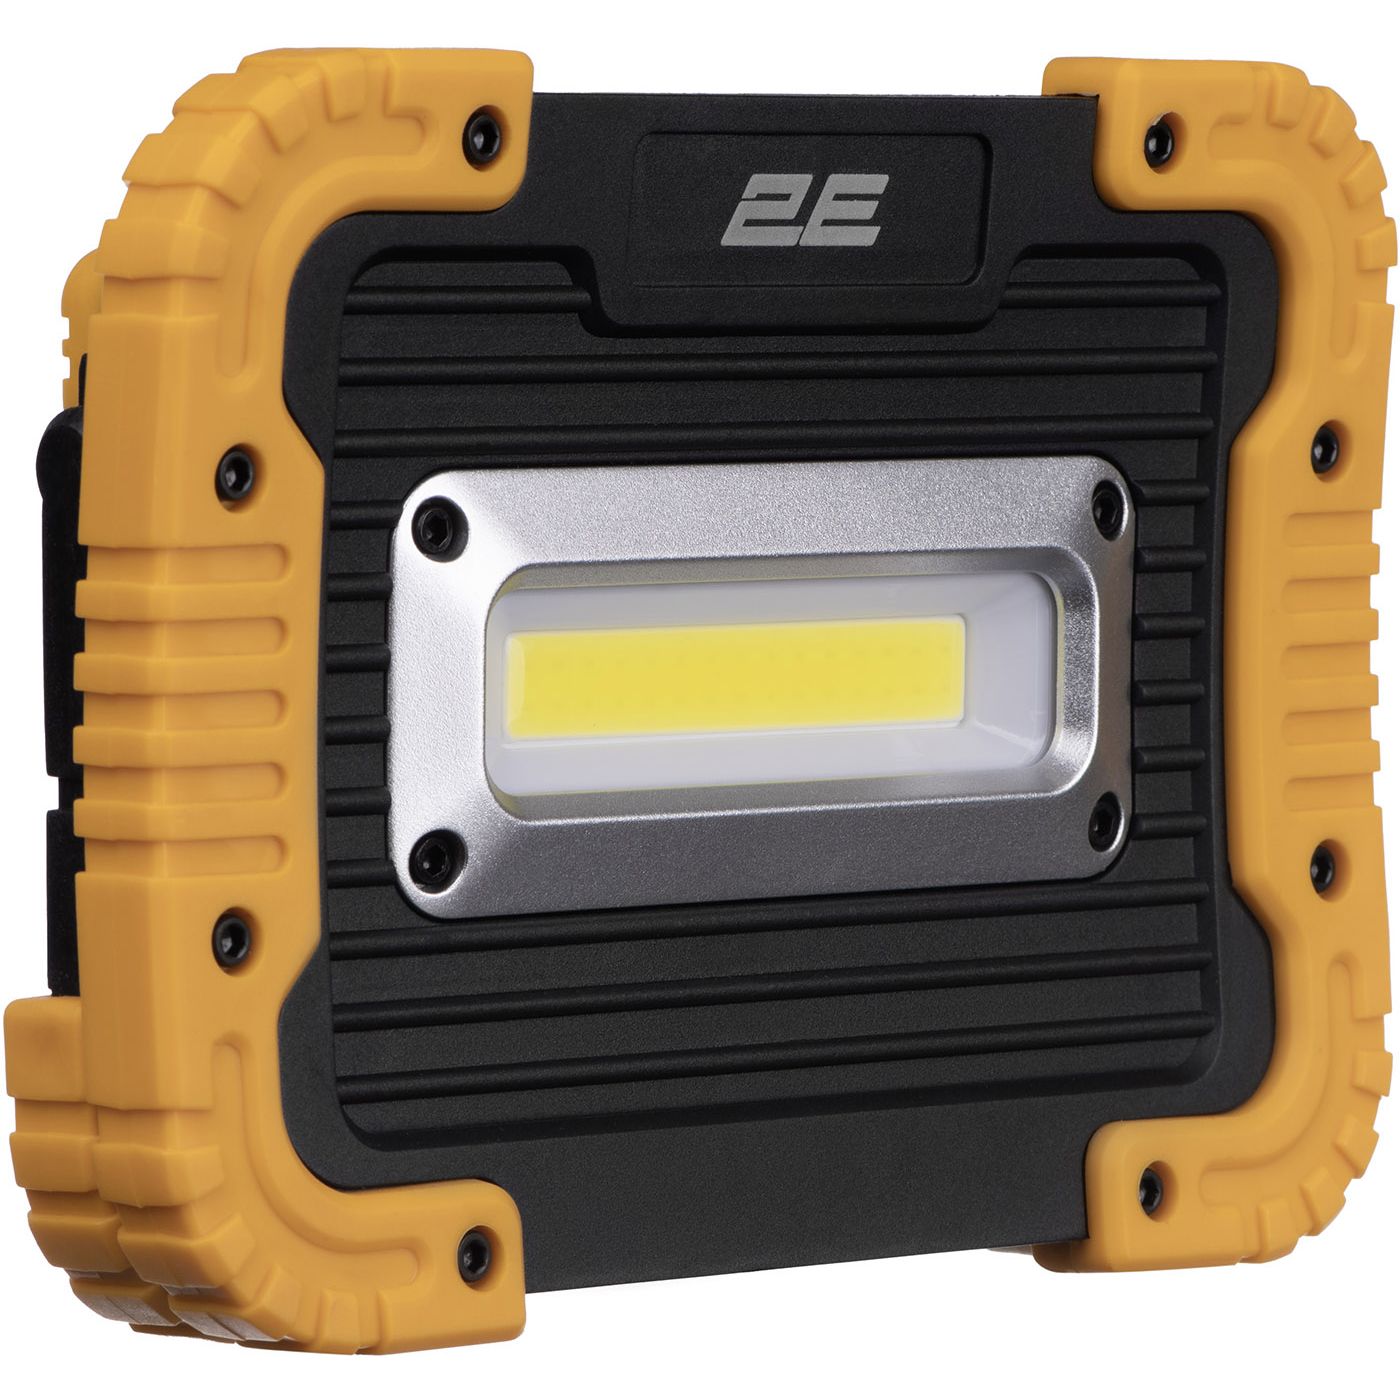 Прожектор акумуляторний 2E Comfort Home 4400 мА/год 3 функції освітлення (2E-WLBL1844) - фото 4